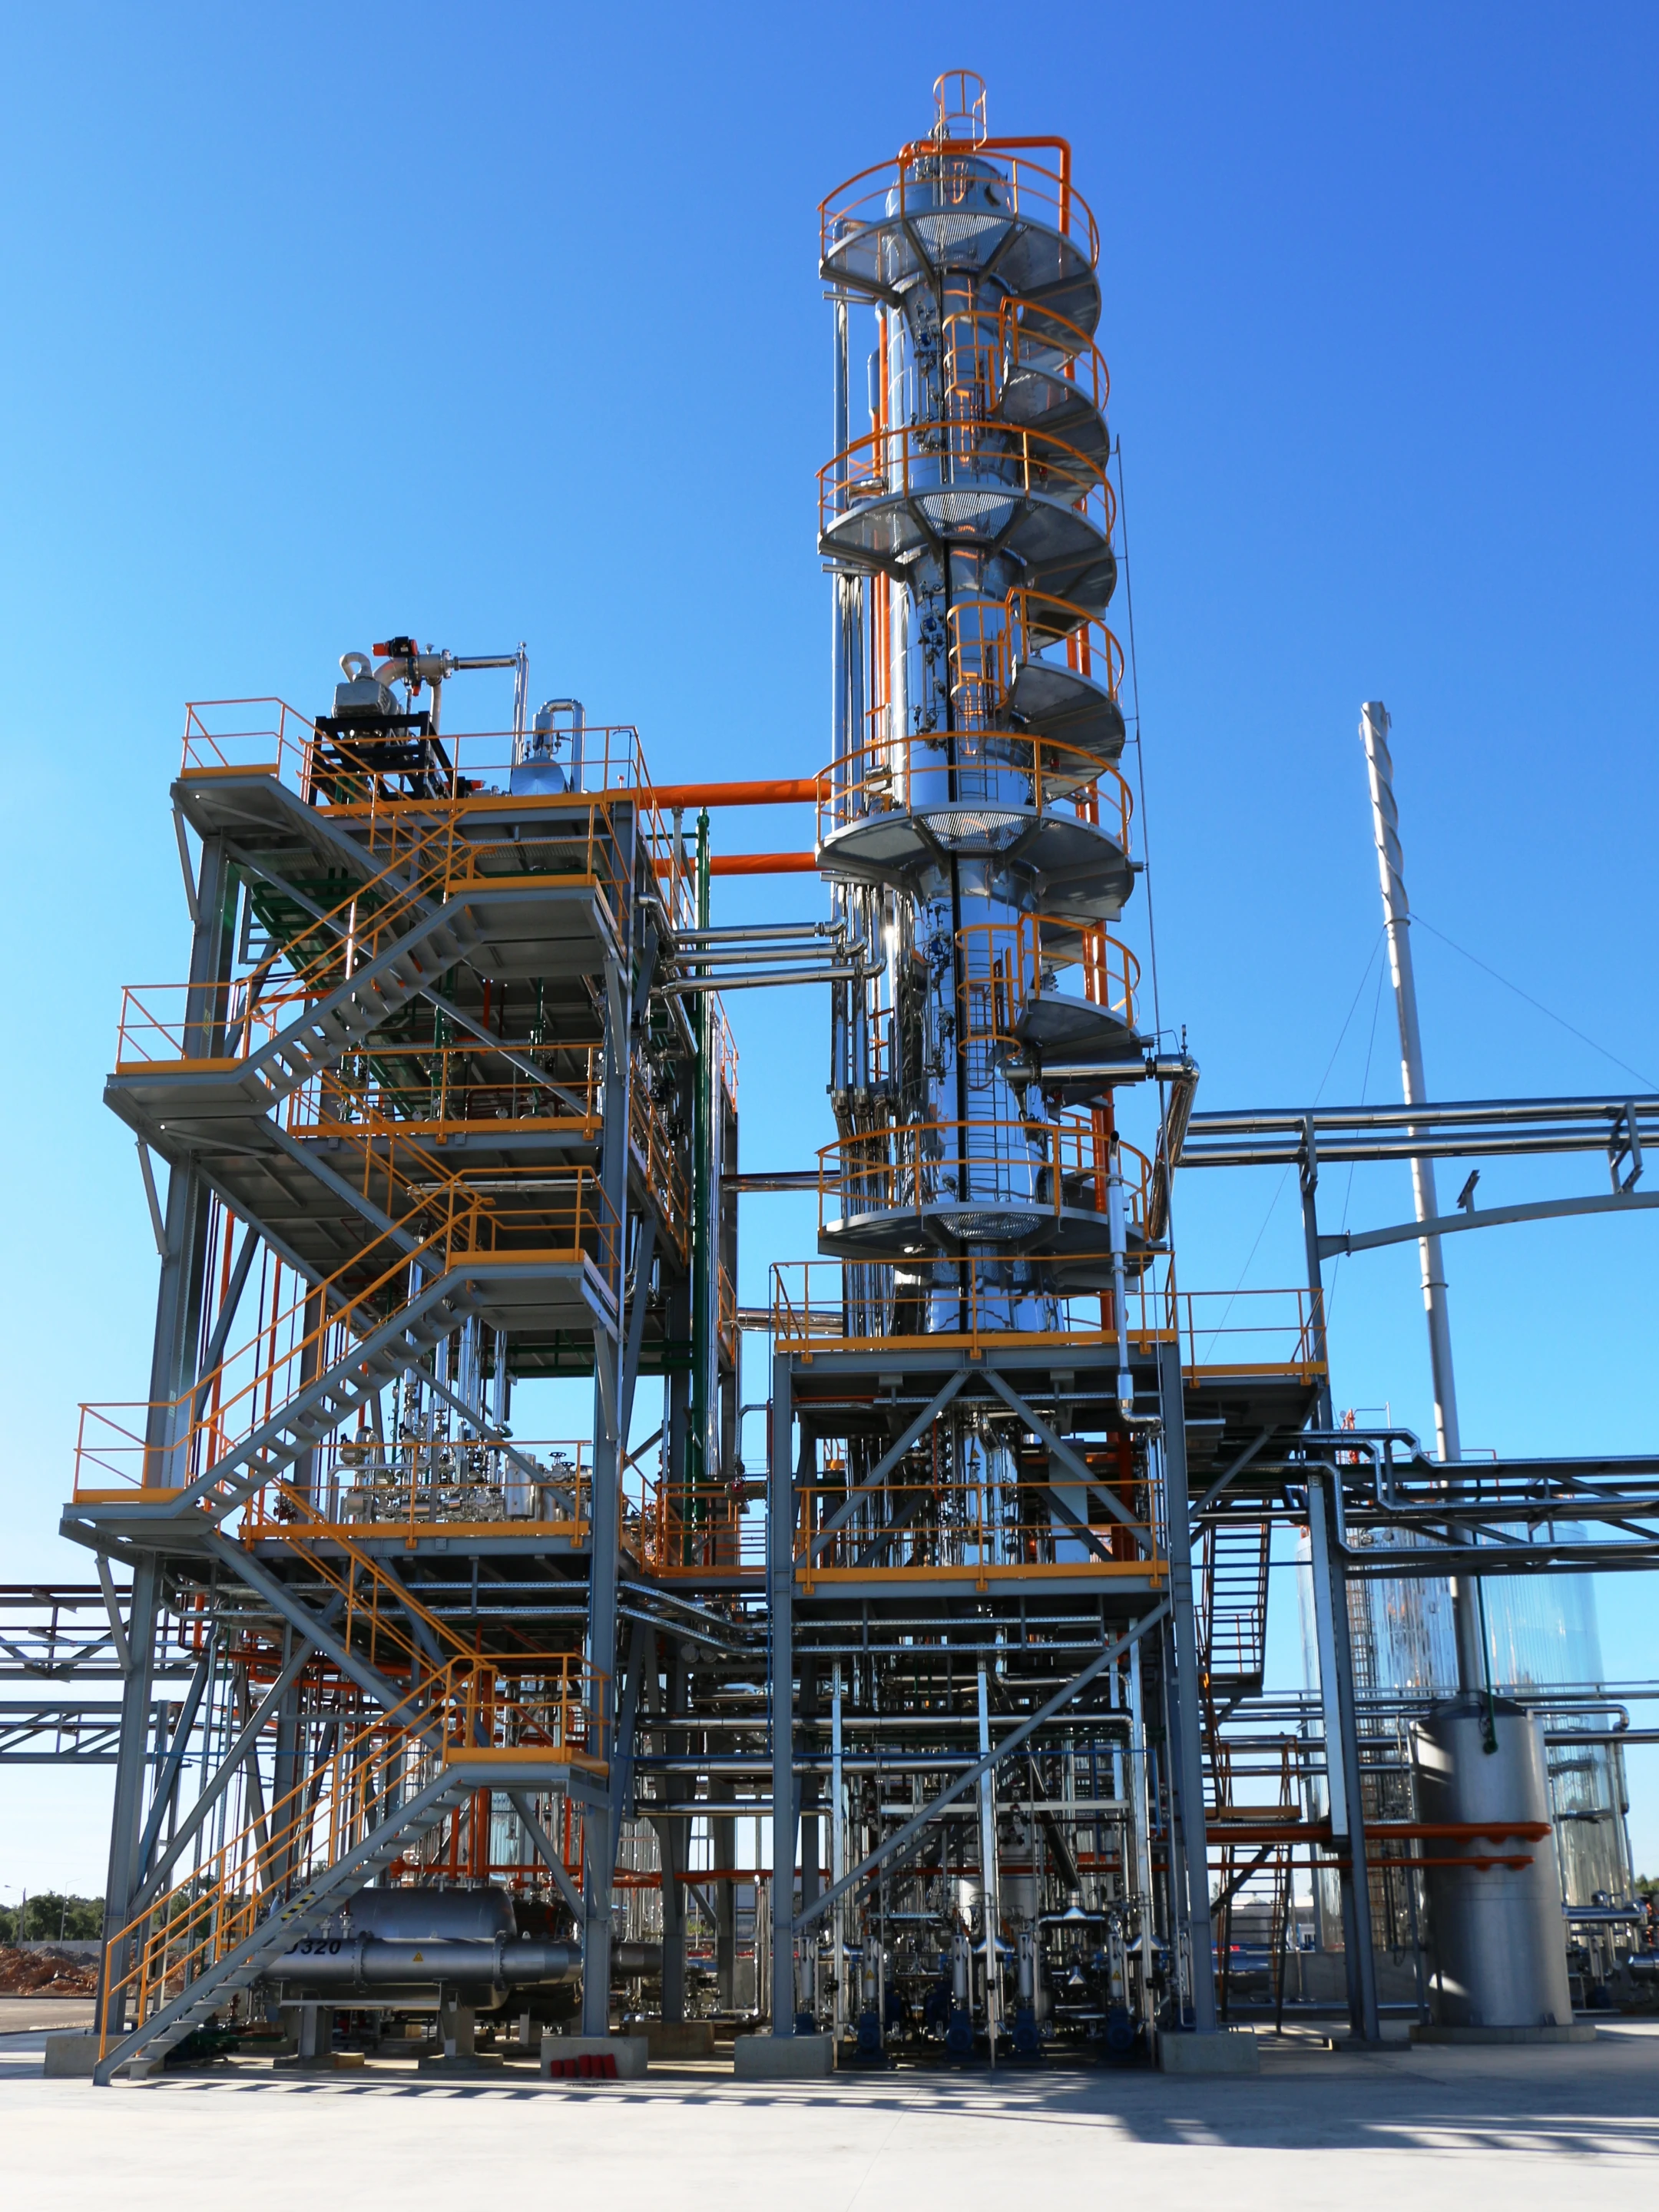 BTL Oil production/regeneration